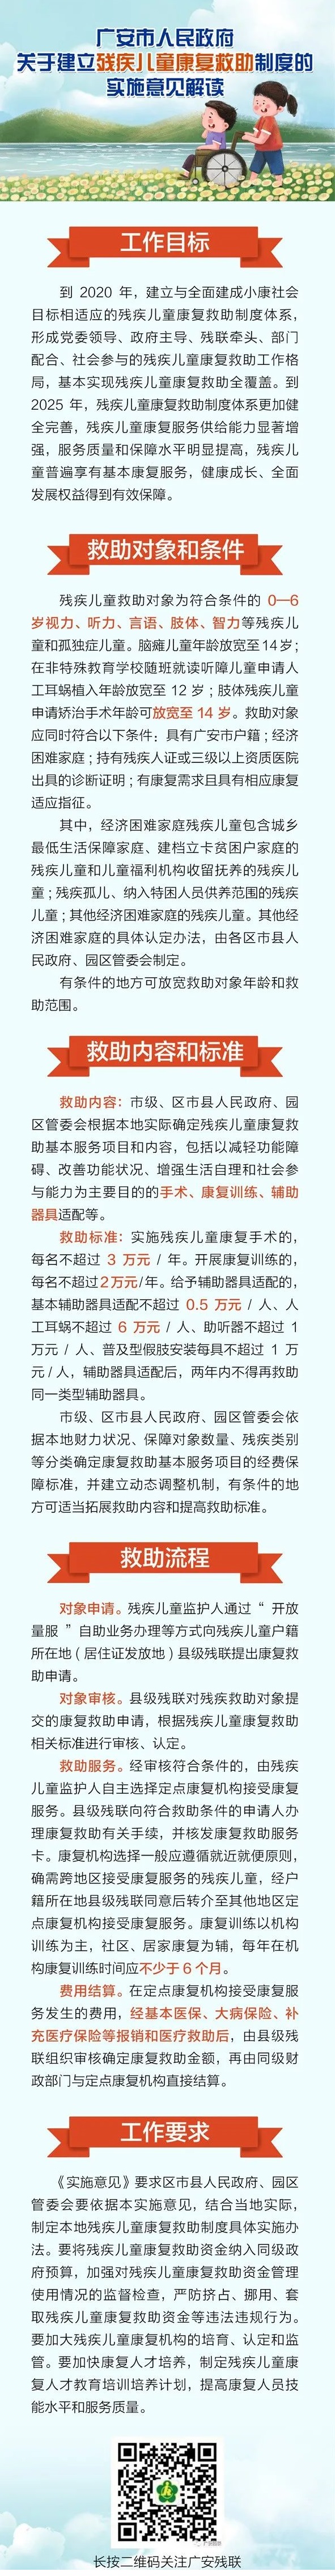 广安市人民政府关于建立残疾儿童康复救助制度的实施意见解读